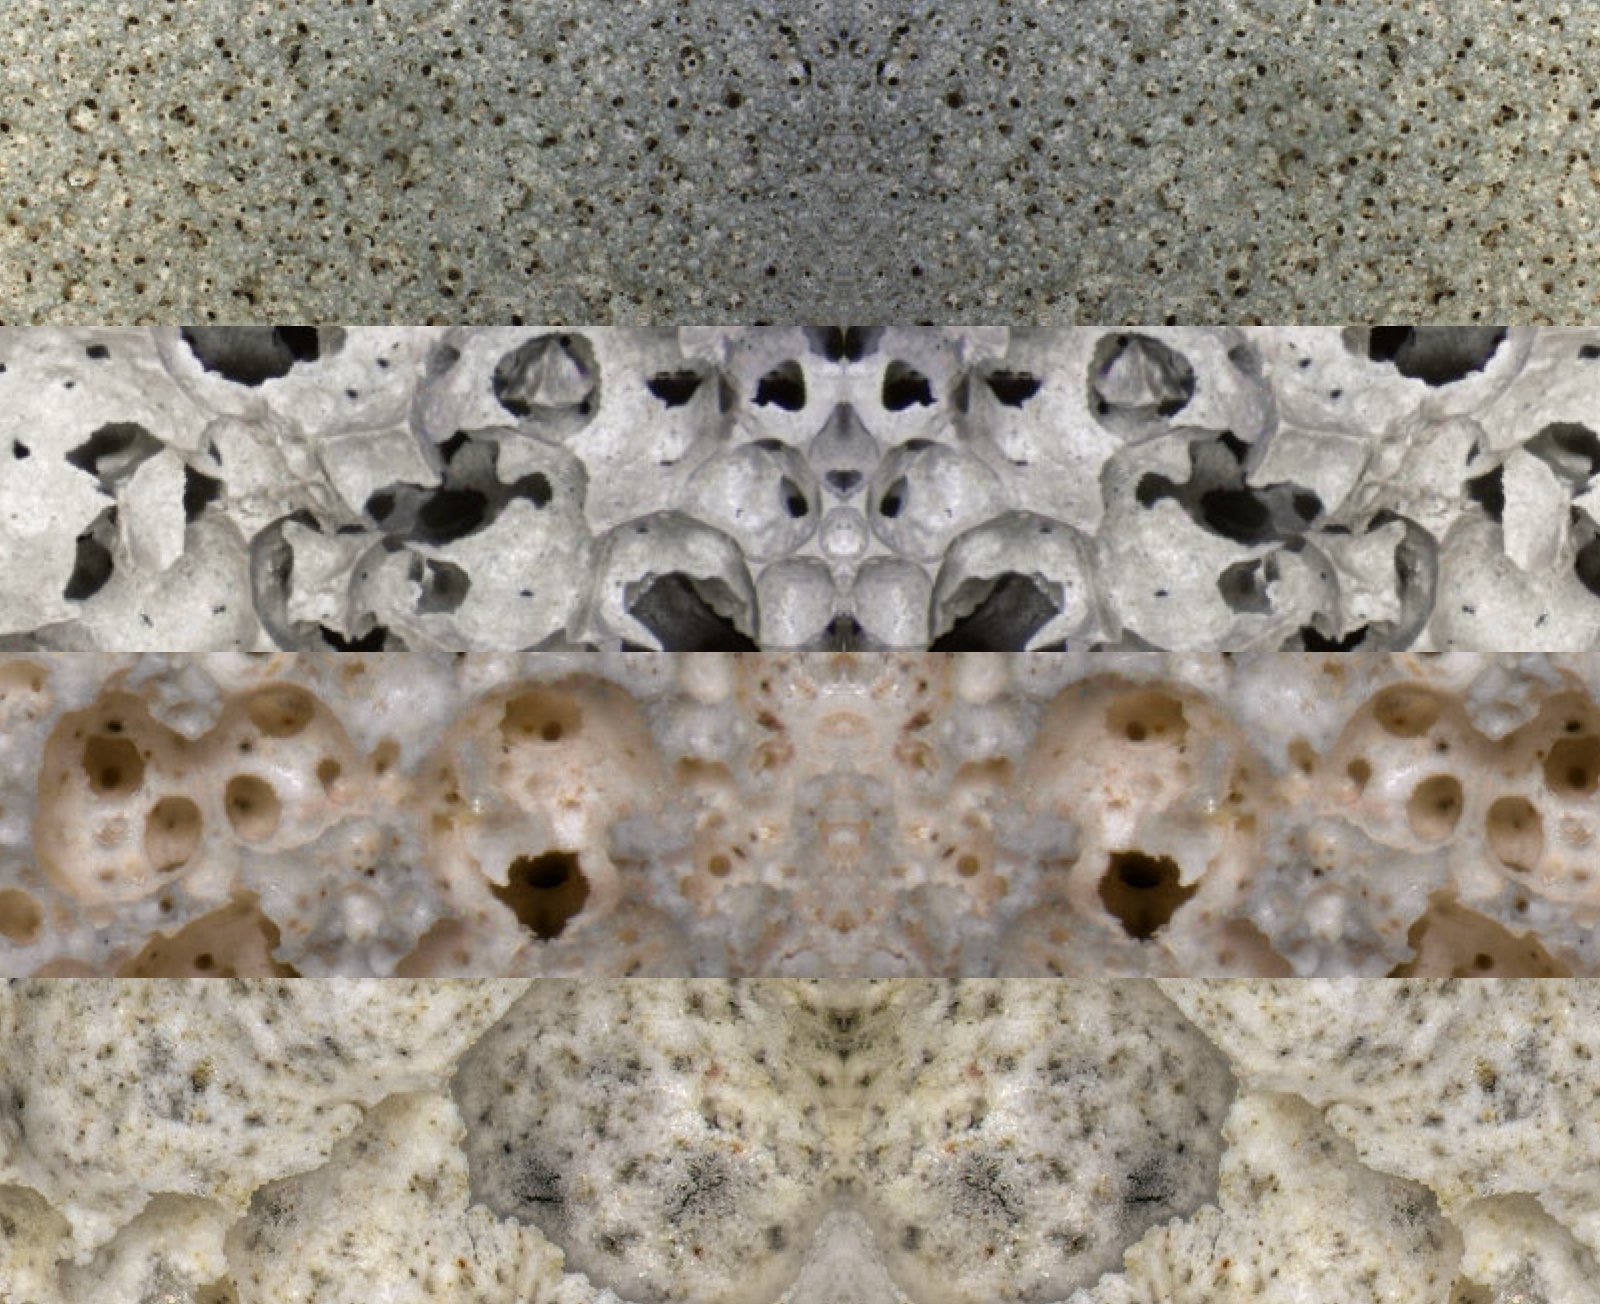 Vier horizontale Bilder von verschiedenen Schaumbetonen unter dem Mikroskop betrachtet mit runden Poren von fein bis grob.